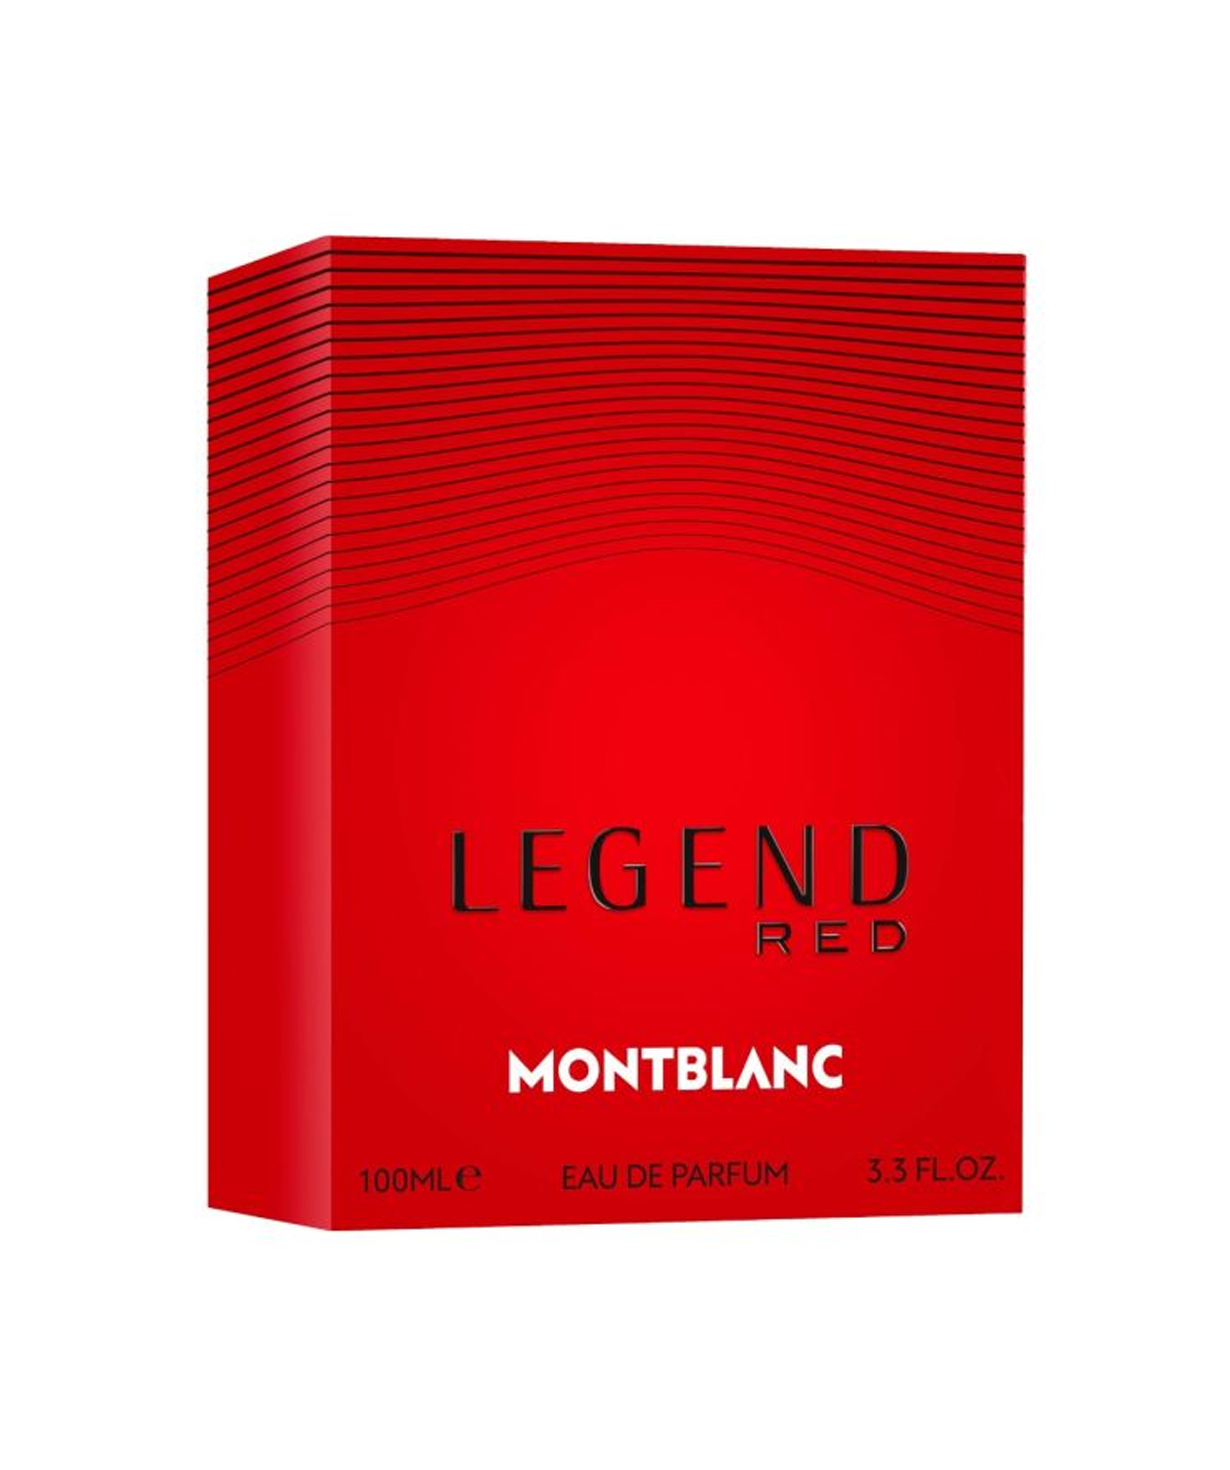 Парфюм «Montblanc» Legend Red, мужской, 100 мл